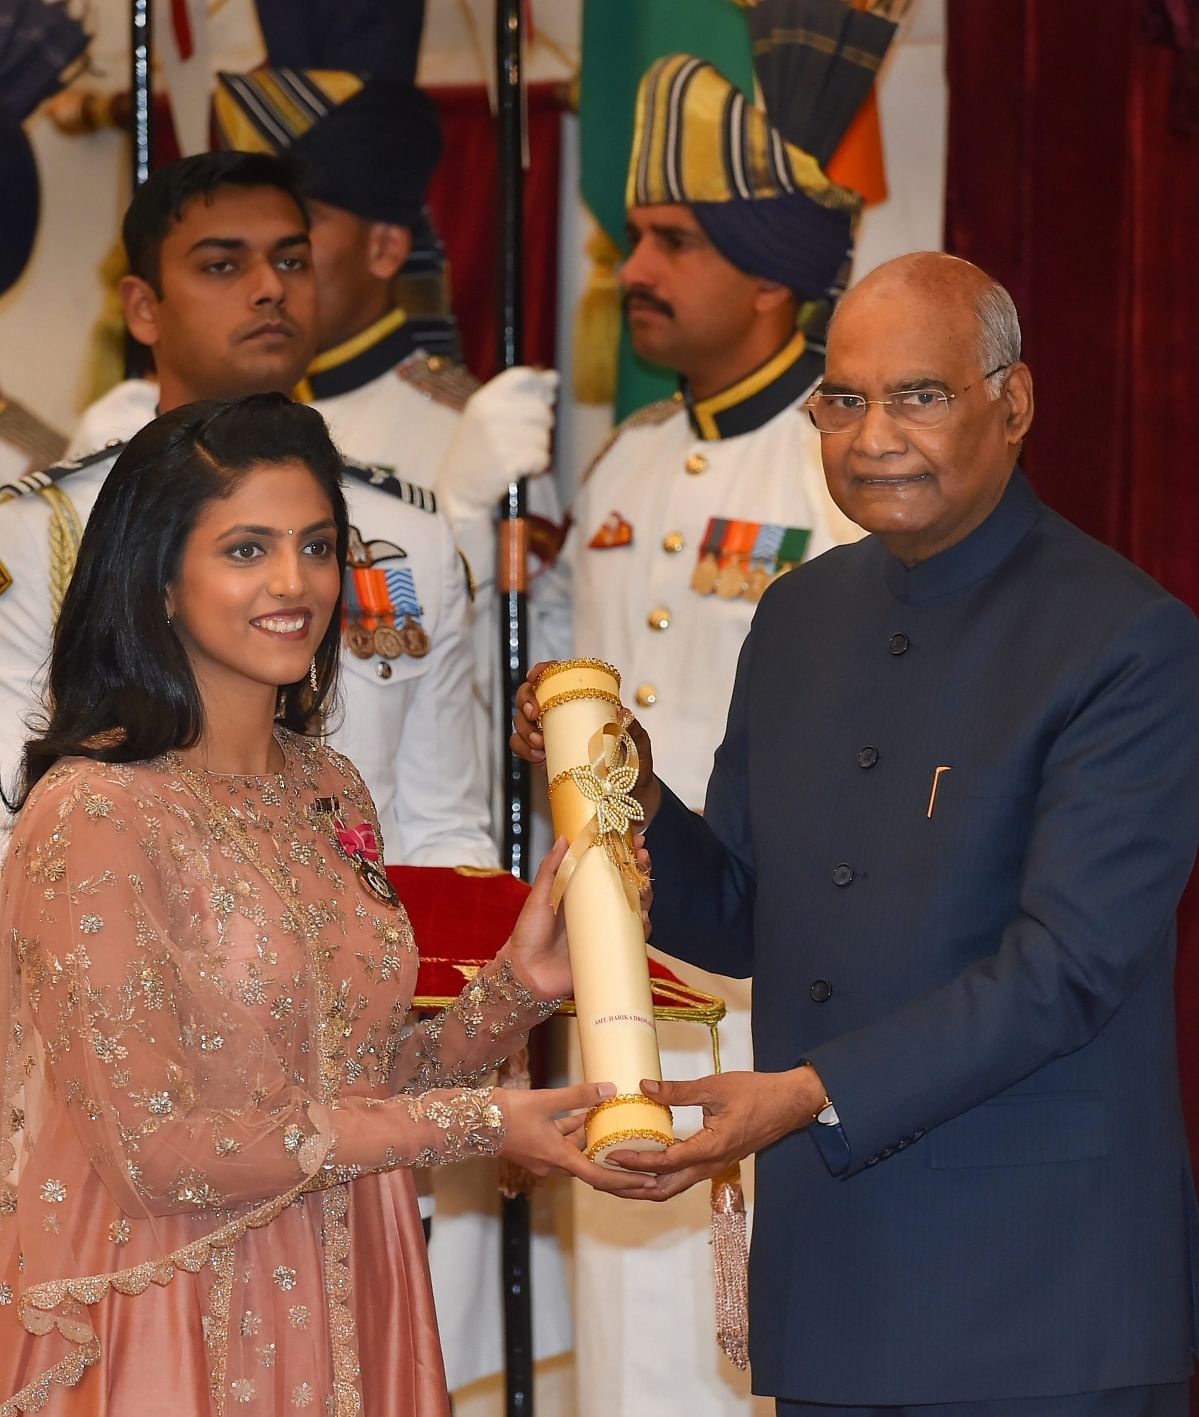 राष्ट्रपति रामनाथ कोविंद ने सोमवार को 112 पद्म पुरस्कारों में से 55 पुरस्कार अलग-अलग विजेताओं को दिए